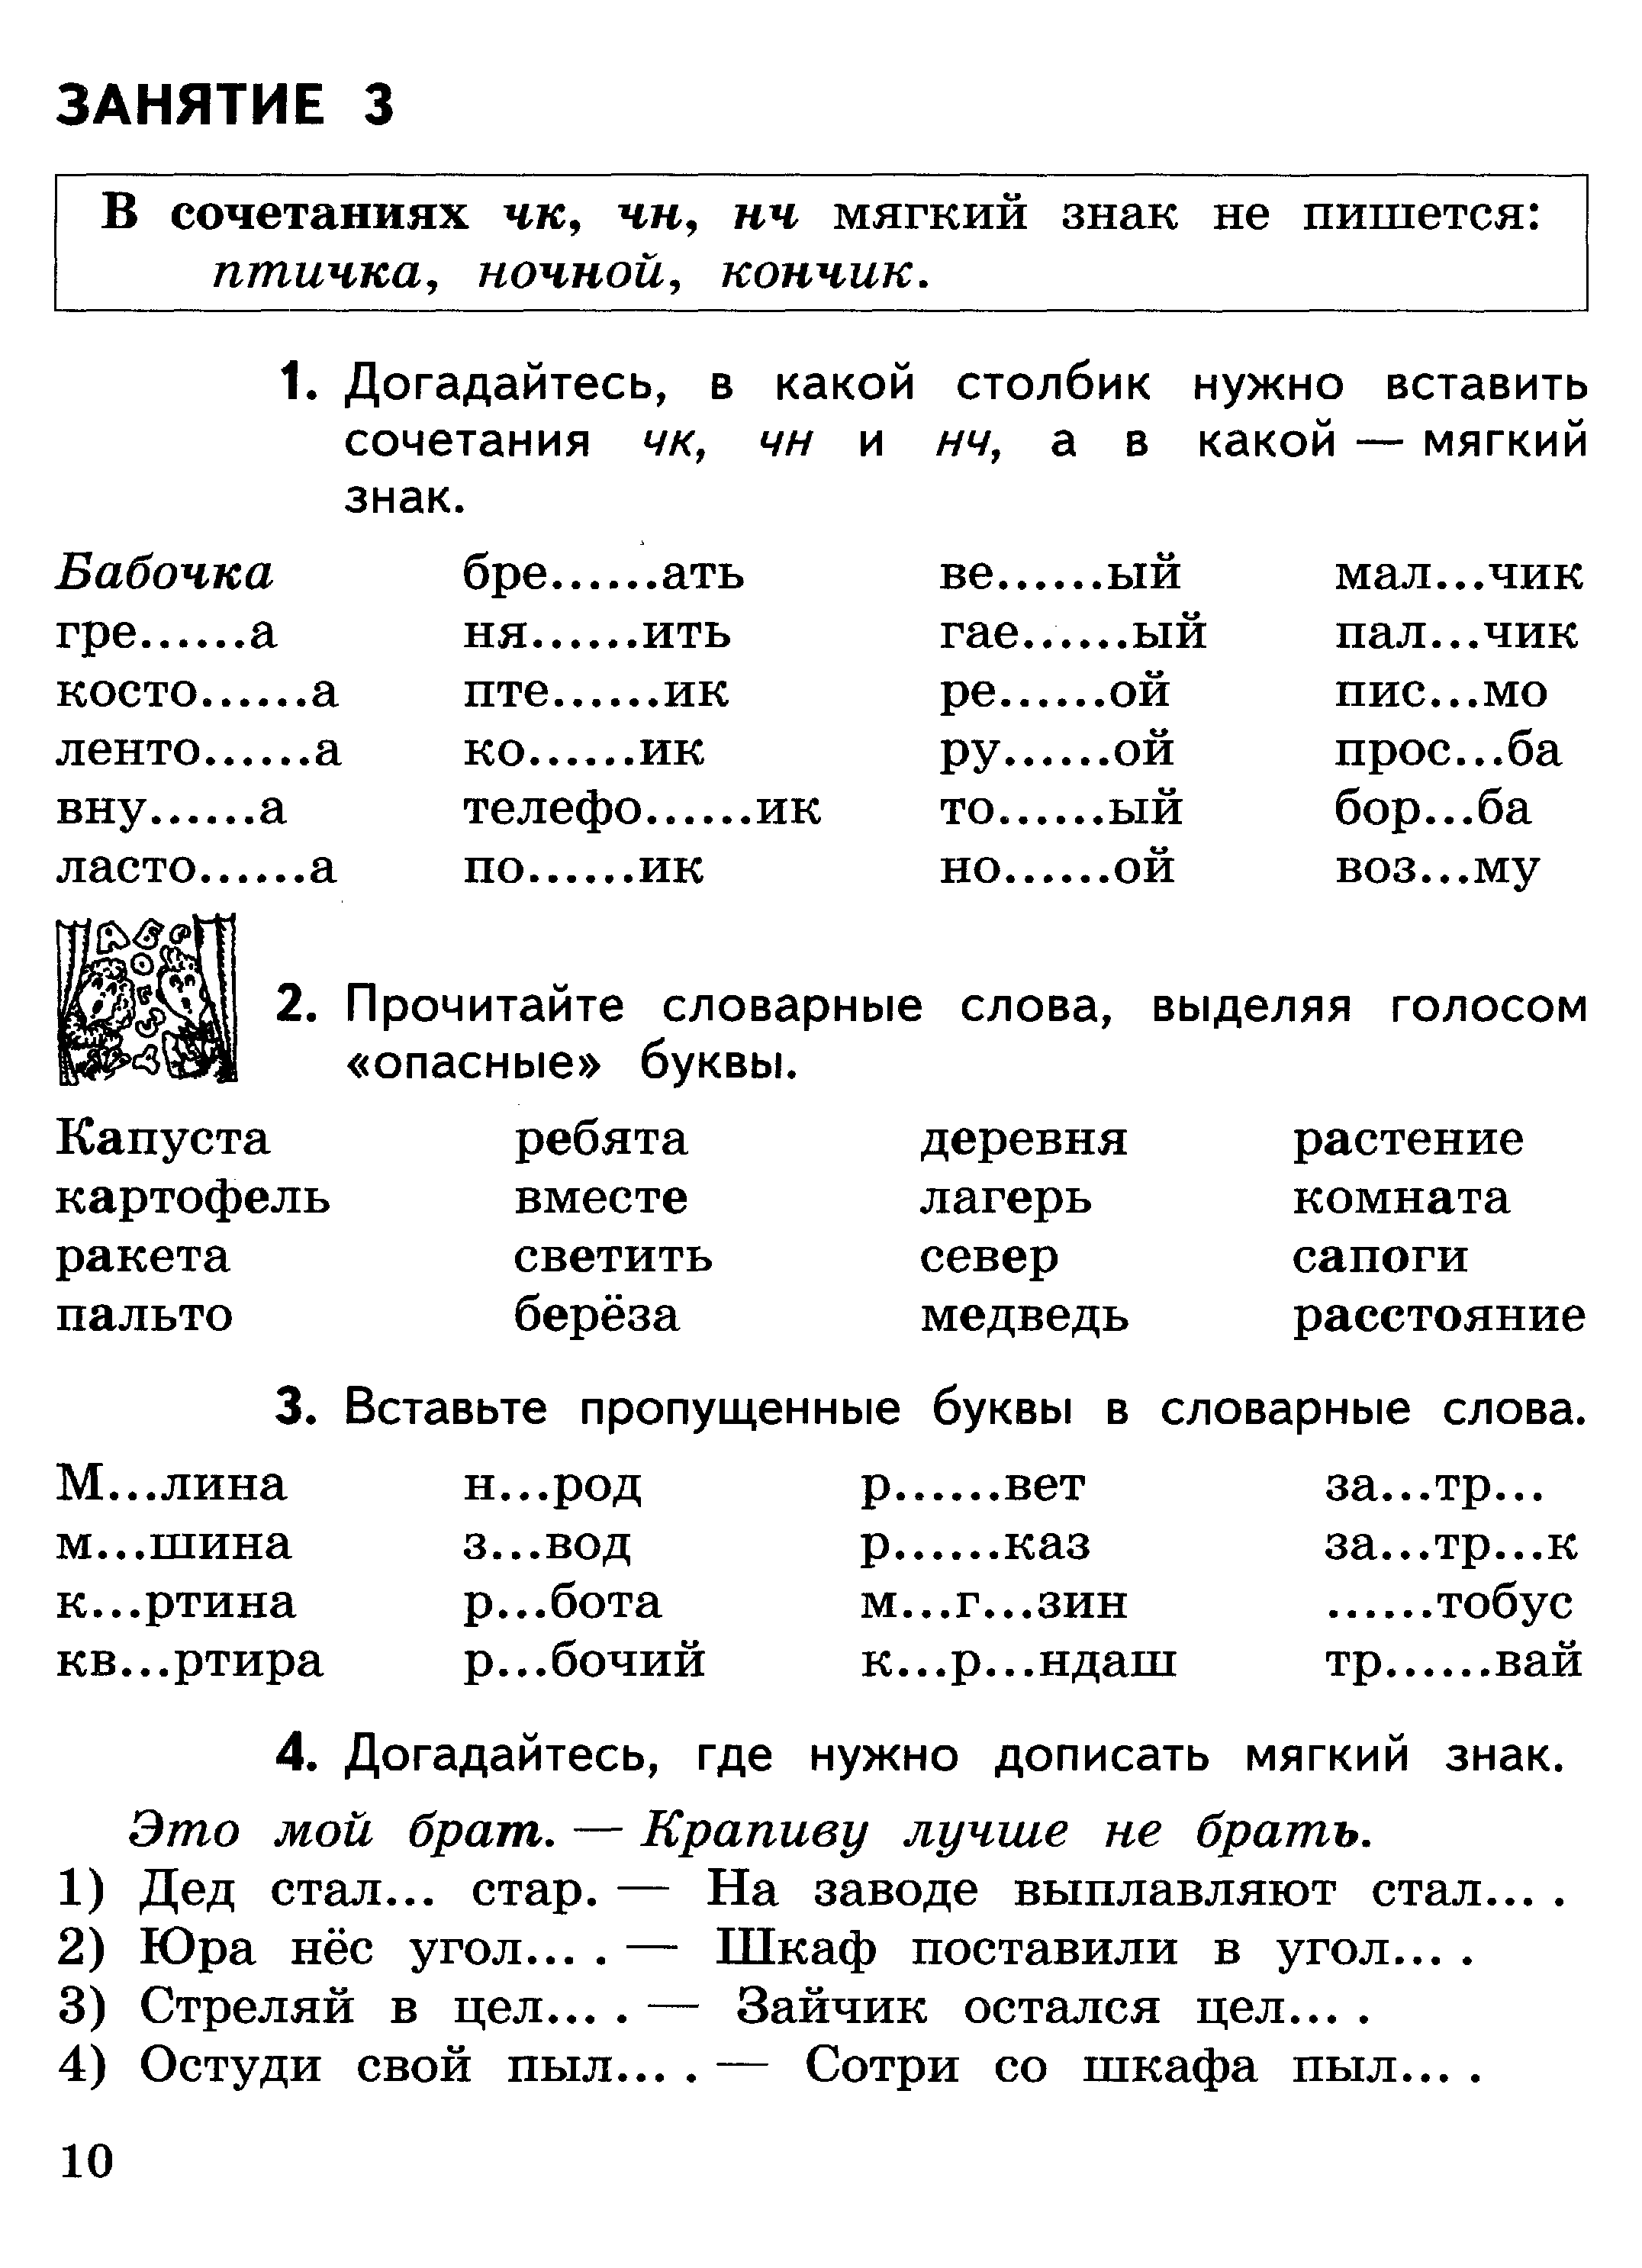 Контрольные задания по русскому языку 2 класс 3 четверть